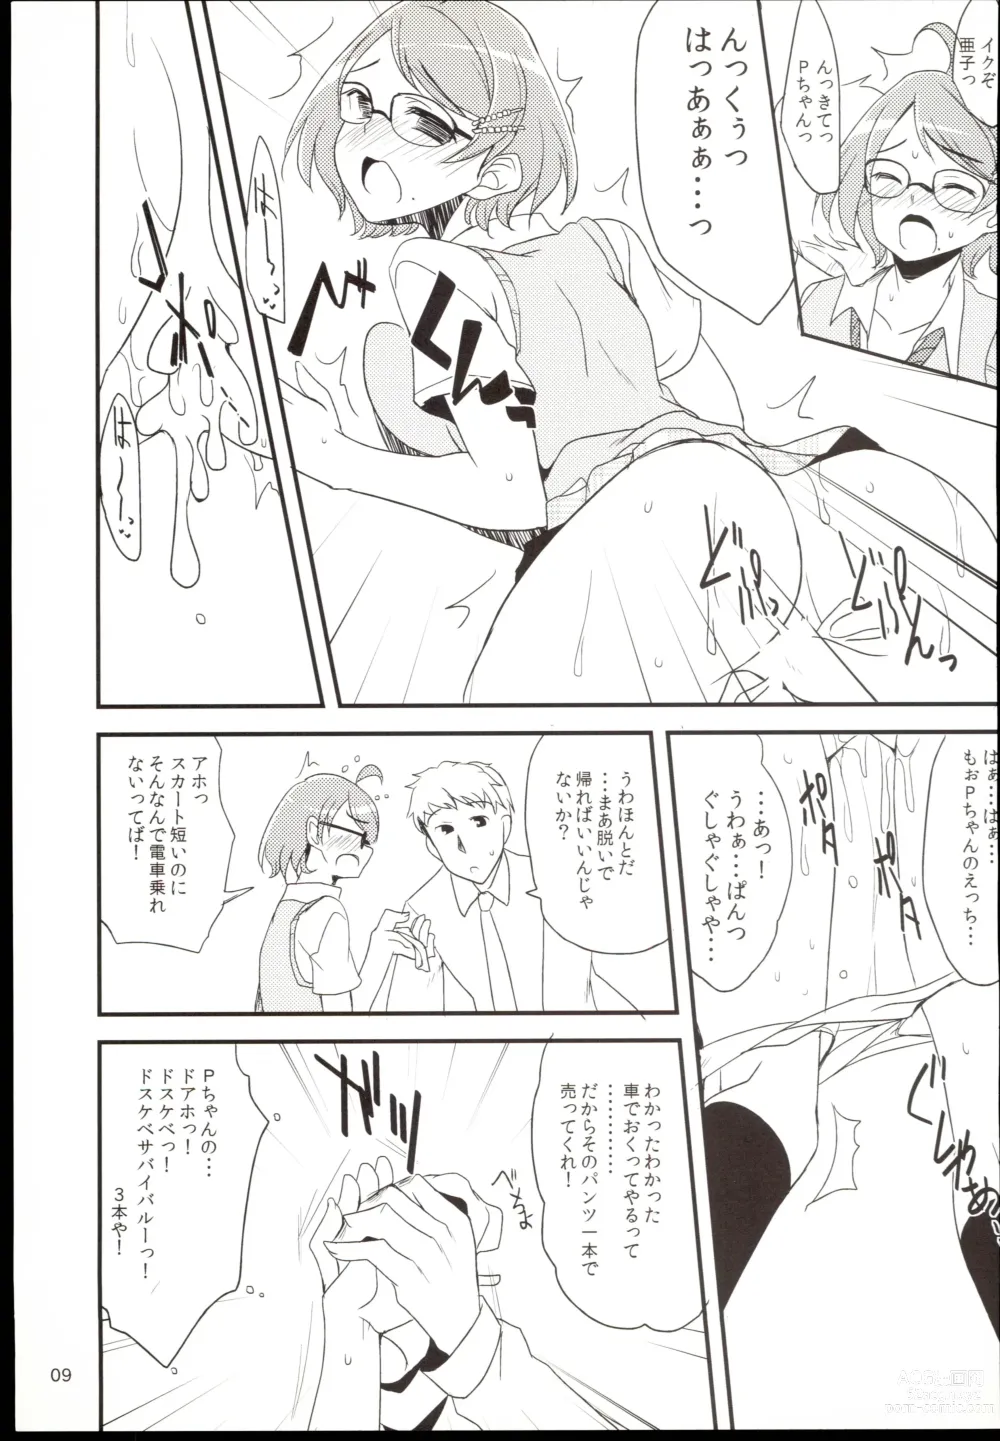 Page 9 of doujinshi Futari no Kankei.